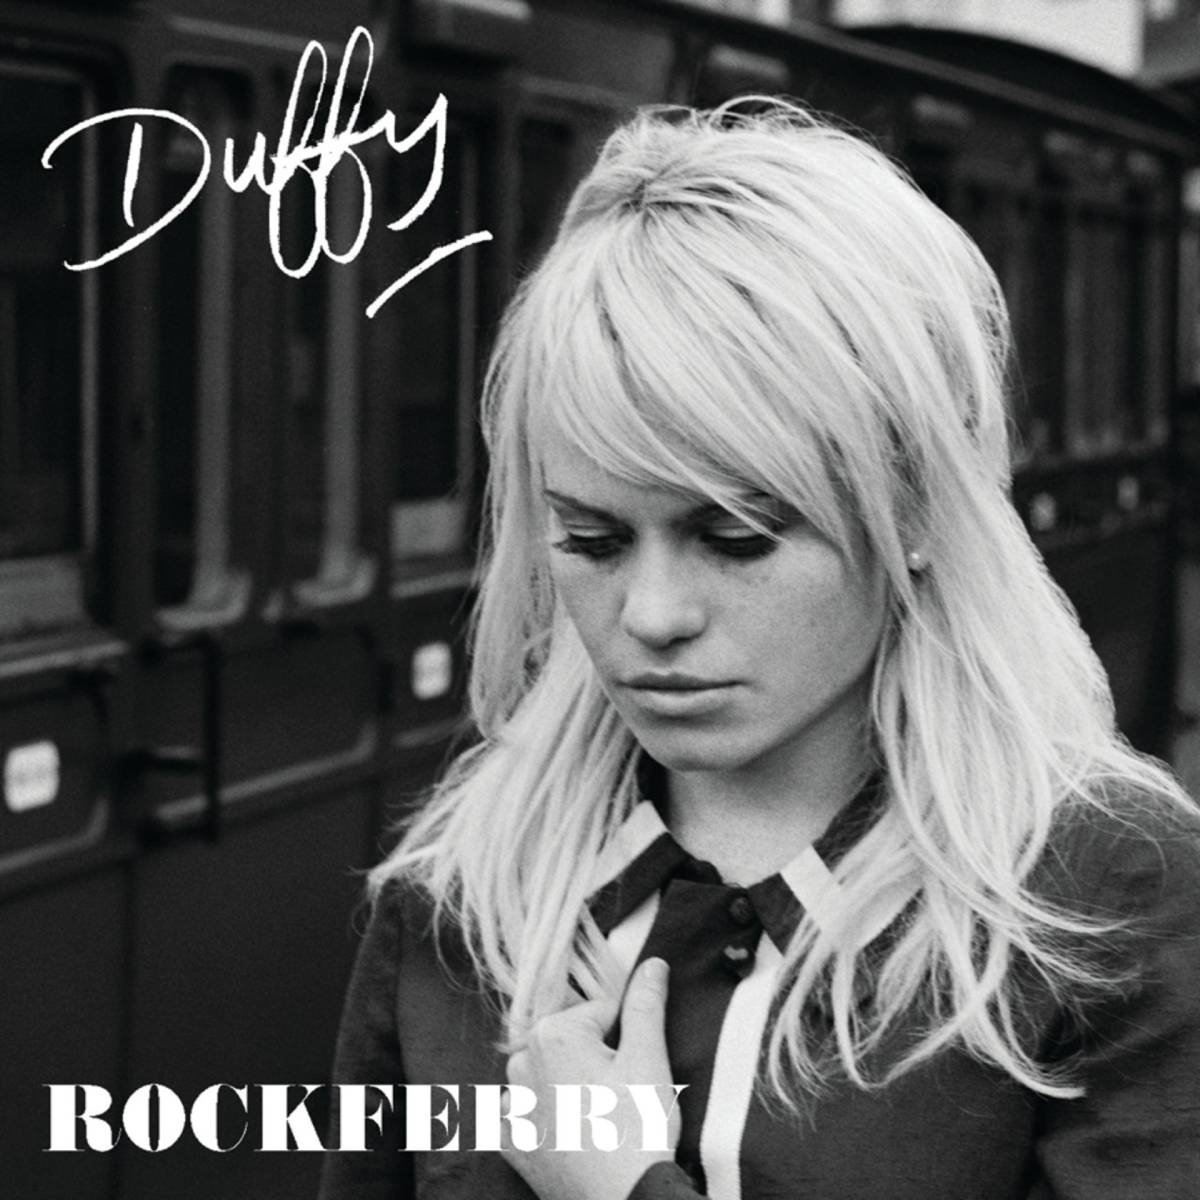 Singer Duffy's Rockferry music album